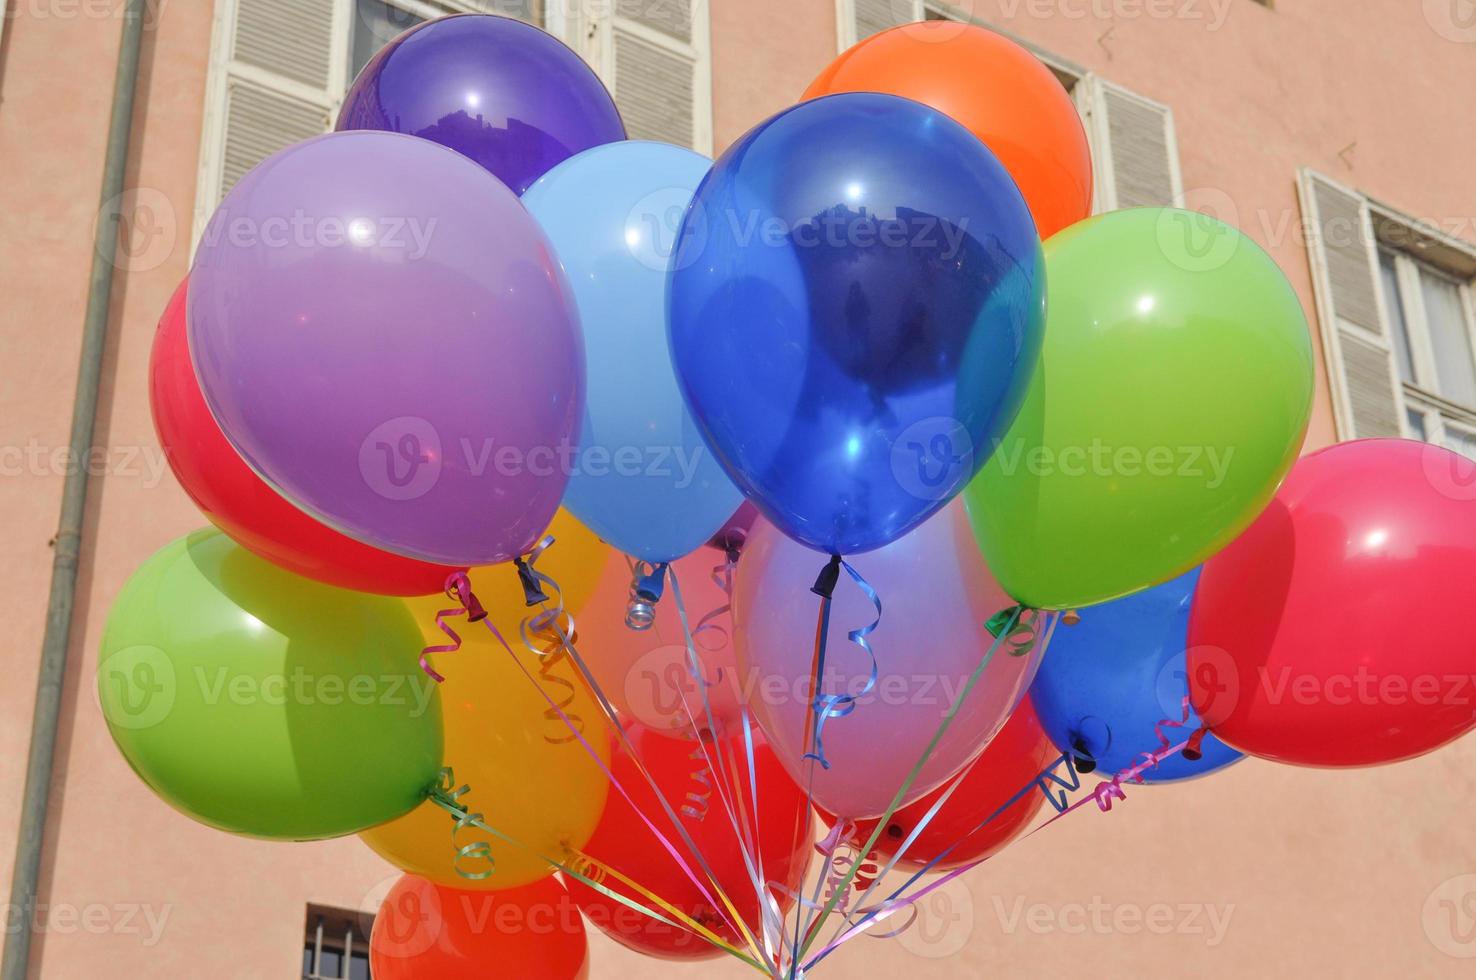 balões de ar infláveis cheios de gás ou ar foto